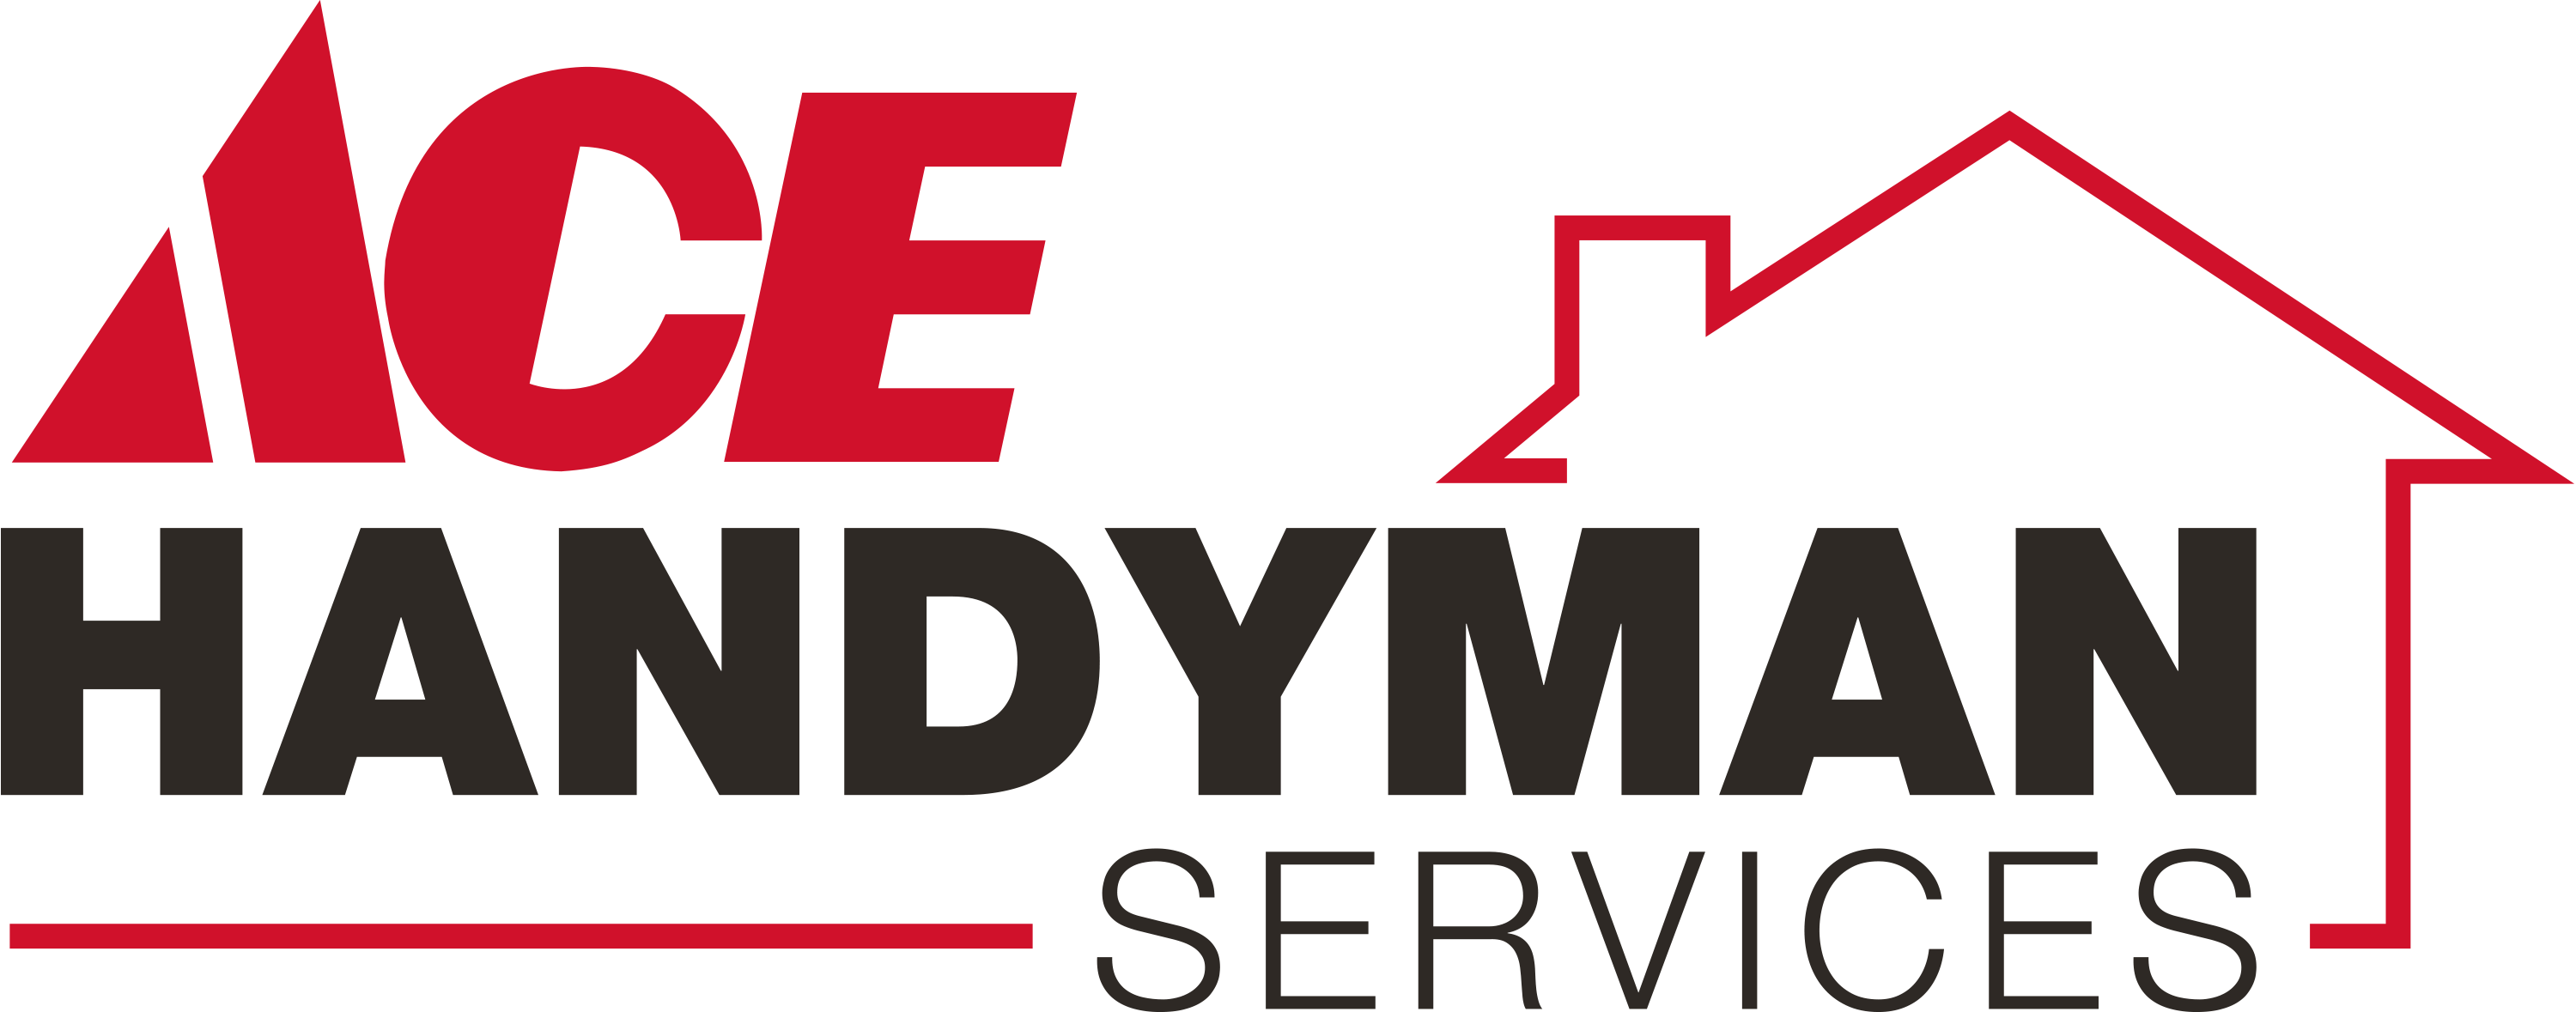 Ace Handyman Services North Indianapolis Logo